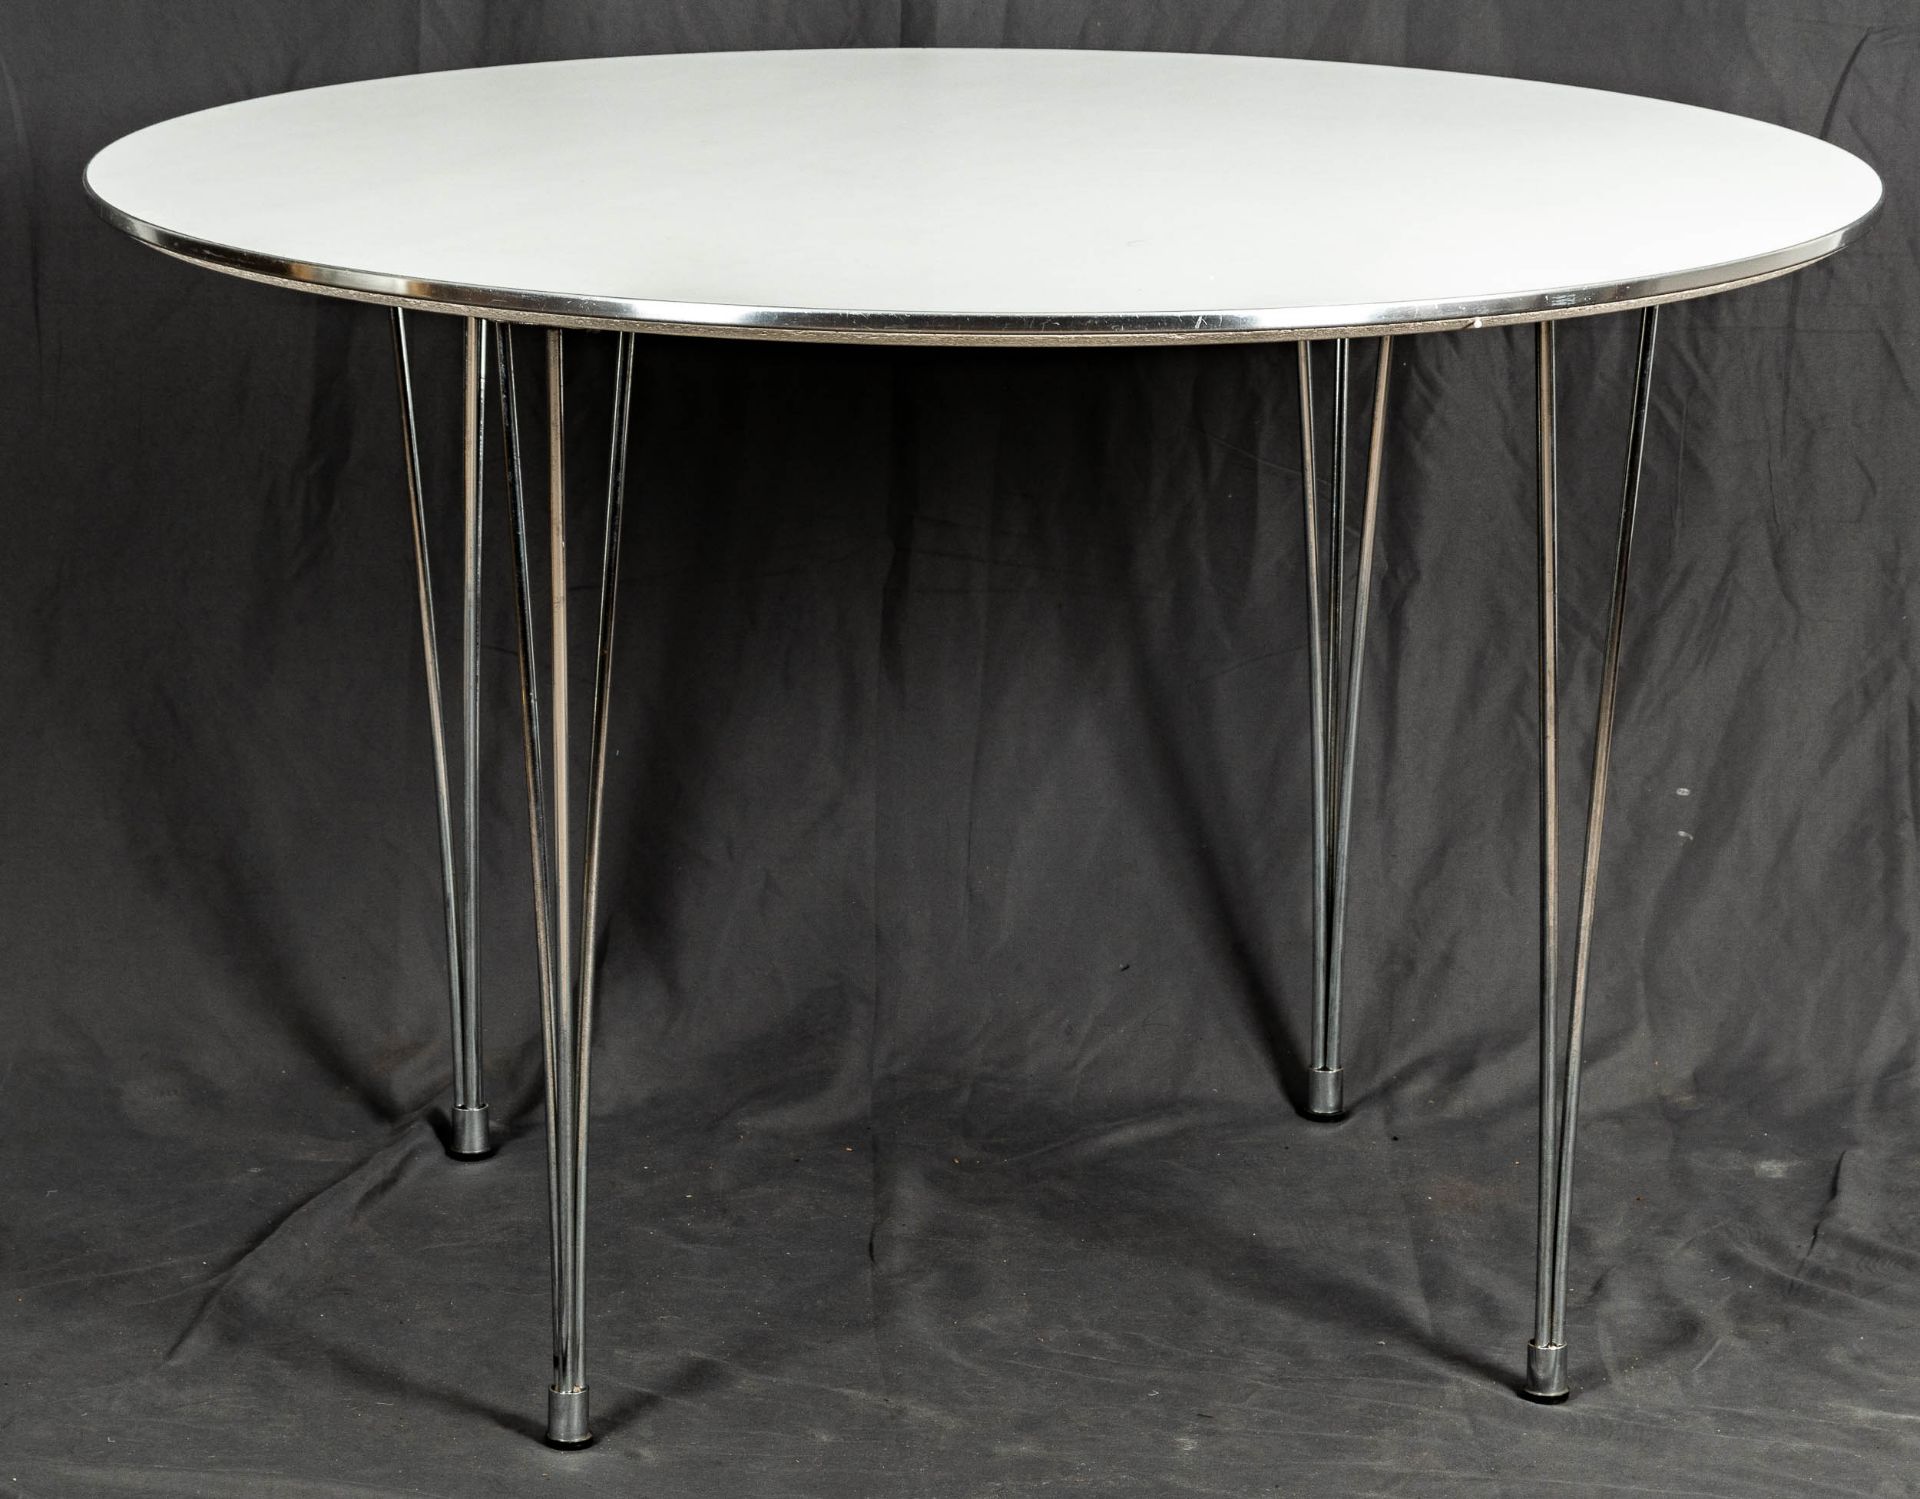 Runder Esstisch, Tischplatte unterhalb bezeichnet "Ansager Möbler A/S Tisch-Nr. 08318888, made in D